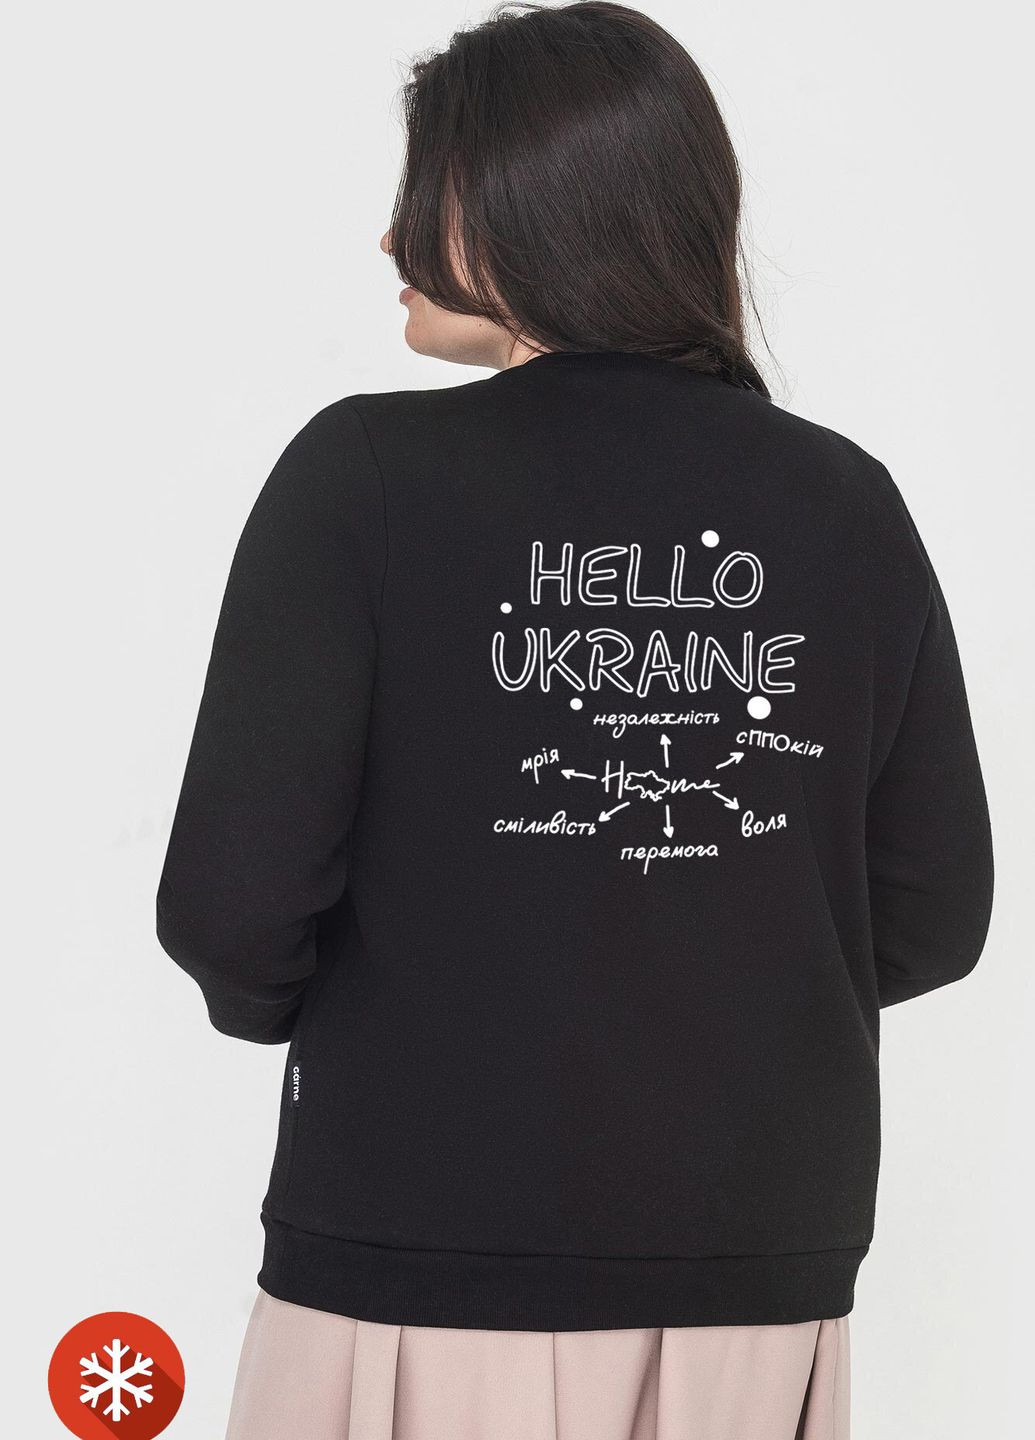 Свитшот "HELLO UKRAINE" на флисе Garne - крой надпись черный спортивный флис - (266415979)